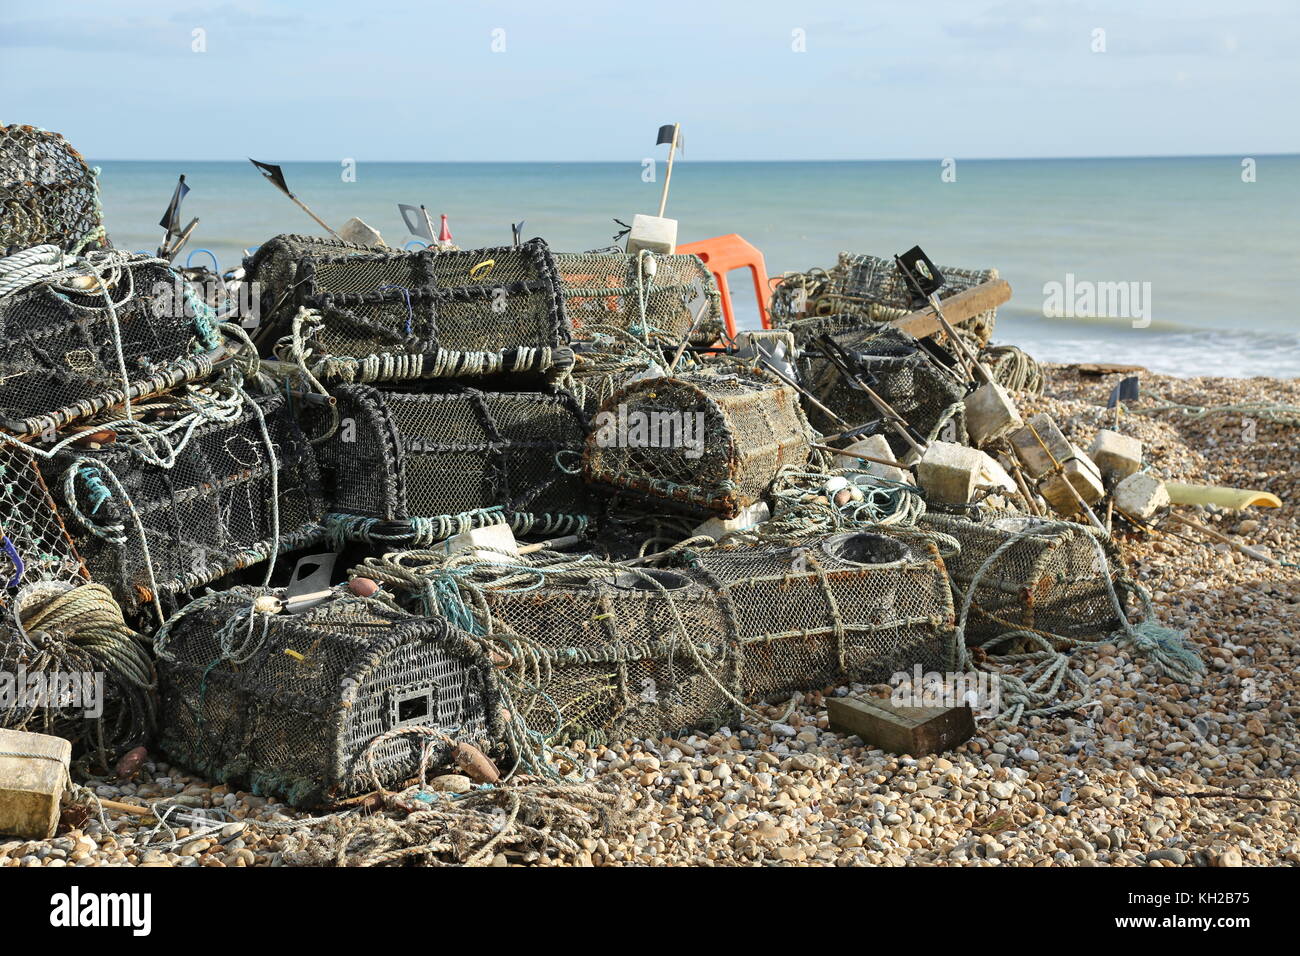 Las ollas de langosta de los pescadores se apilaron en la playa de guijarros en Bognor Regis, West Sussex, Reino Unido. Soleado, día de invierno. Mar tranquilo, marea baja. Foto de stock